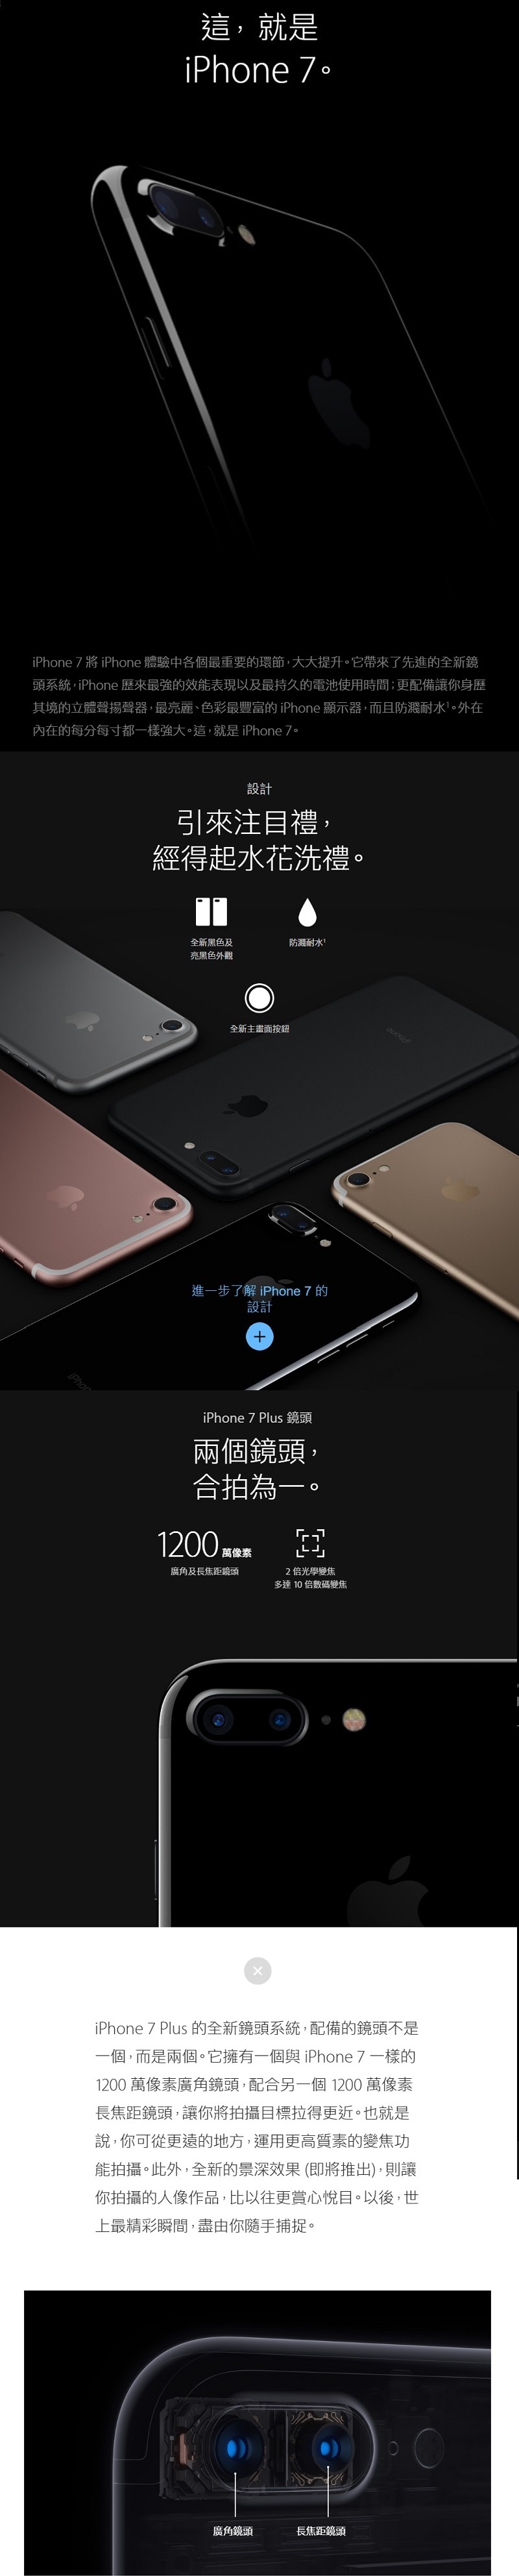 Apple Iphone 7 Plus 32gb 詳細介紹about 香港格價網price Com Hk